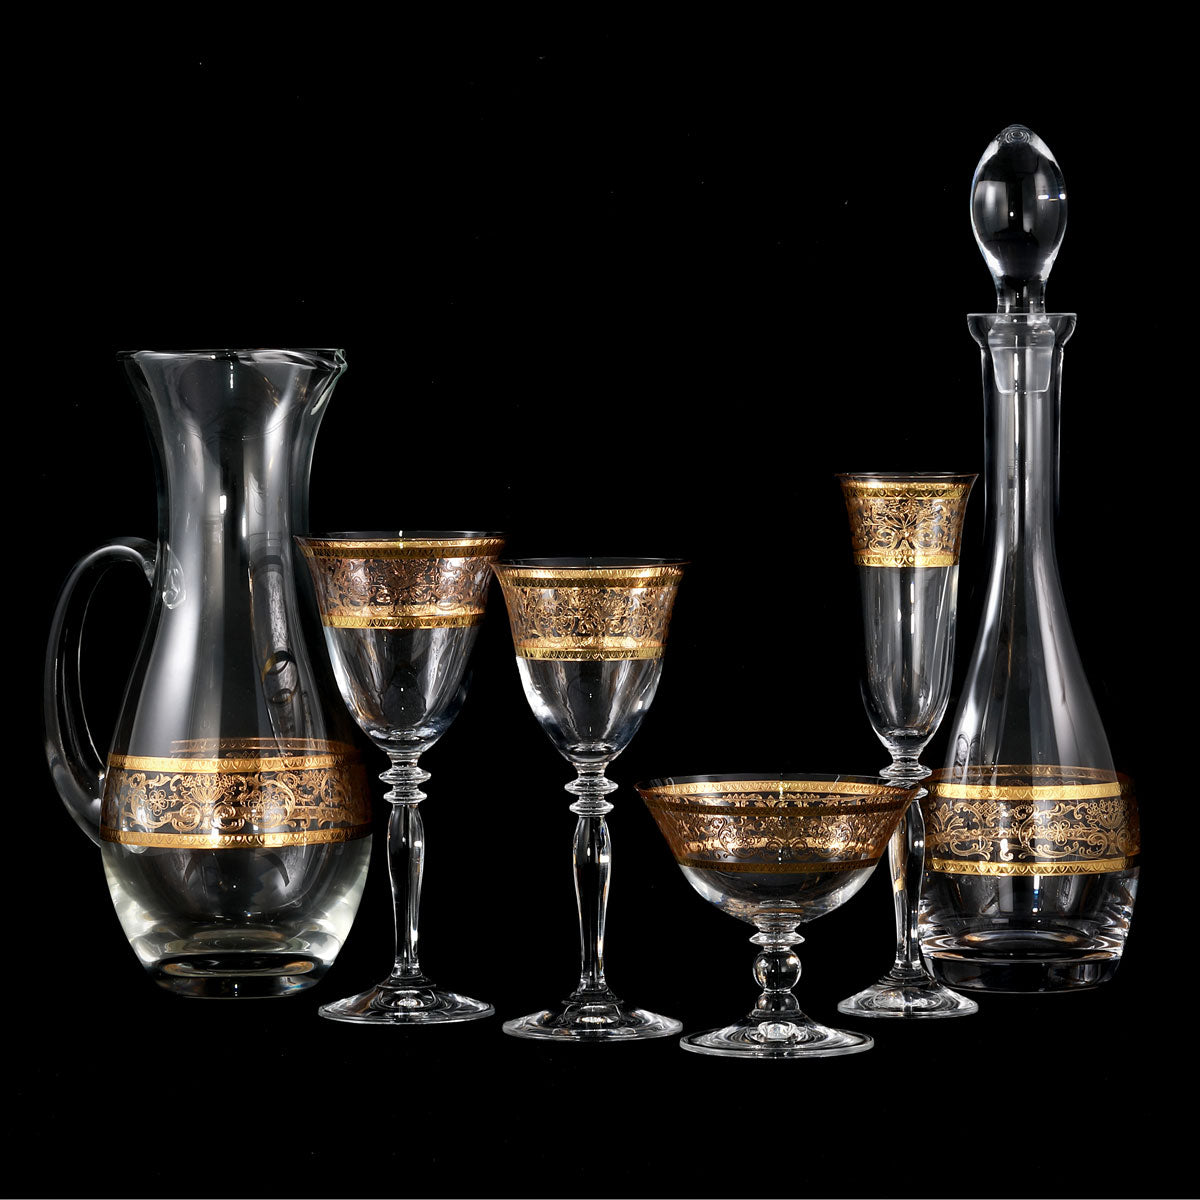 Servizio bicchieri stile classico con decoro lussuoso in oro - Royal